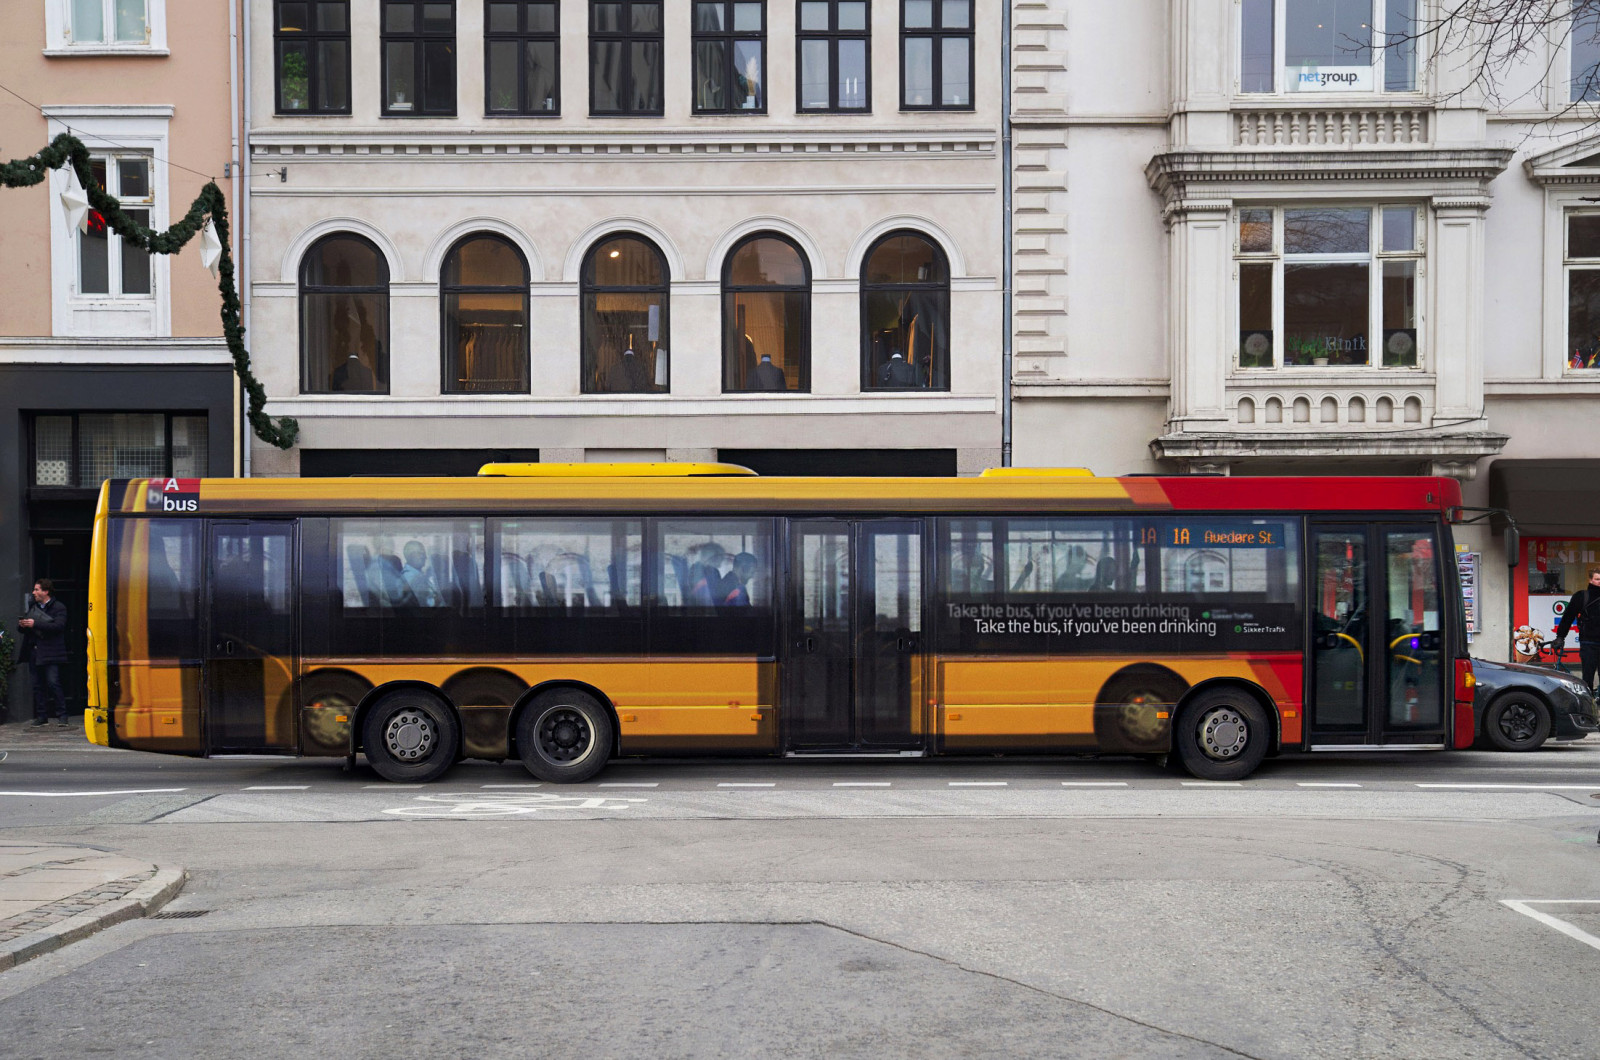 Соціальна реклама проти п'яного водіння, Копенгаген. Напис: "Якщо ви п'яні, краще сідайте в автобус".